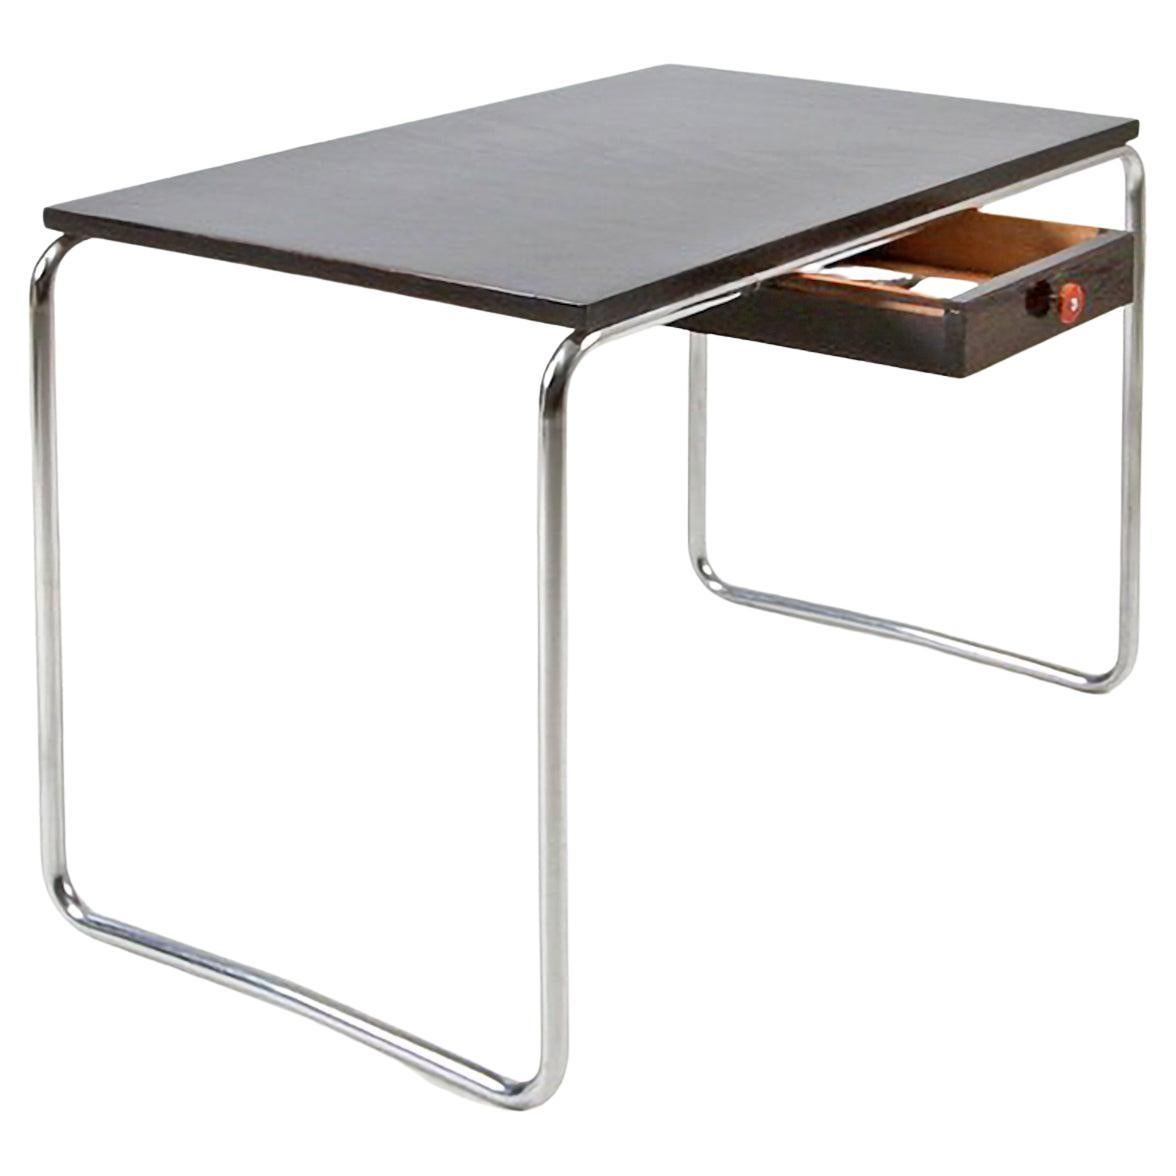 Table moderniste sur mesure en acier tubulaire en métal chromé et bois laqué brillant